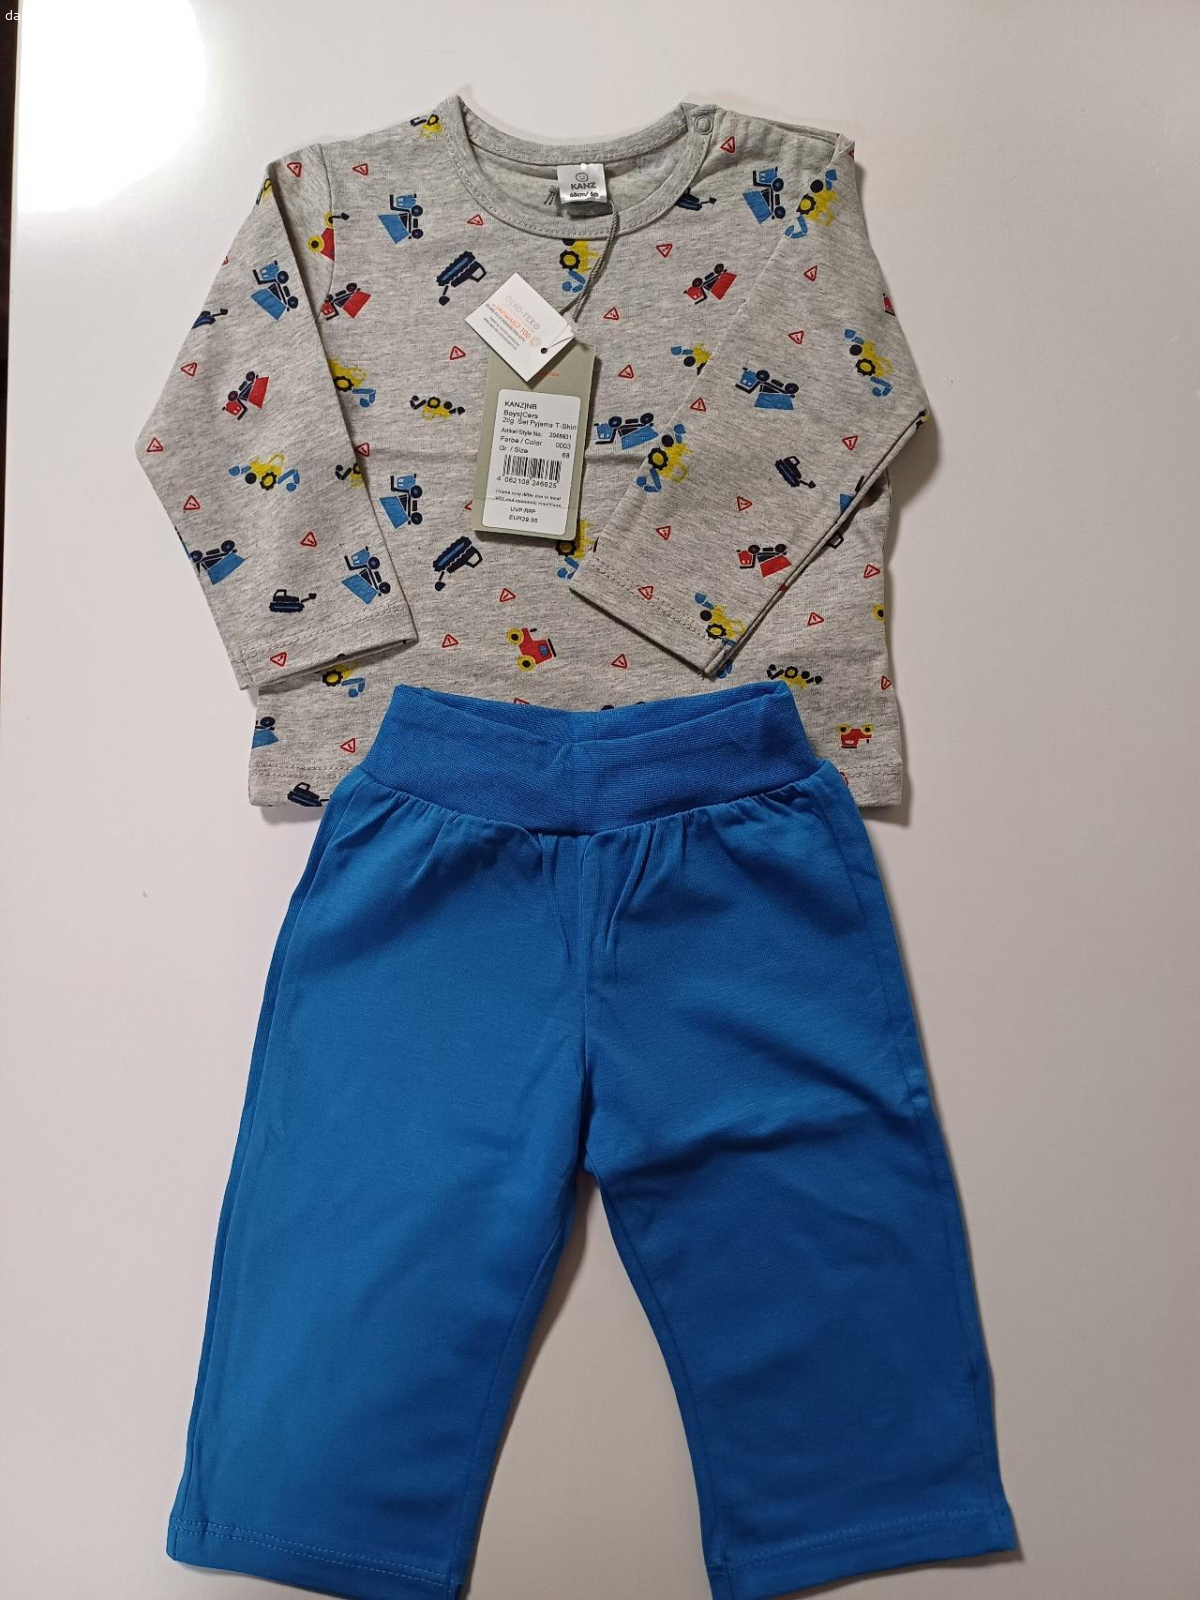 Nové značkové pyžamo Kanz. Dětské, velikost 68. Ráda bych vyměnila za 1kg jablek nebo mrkve pro zvířata.